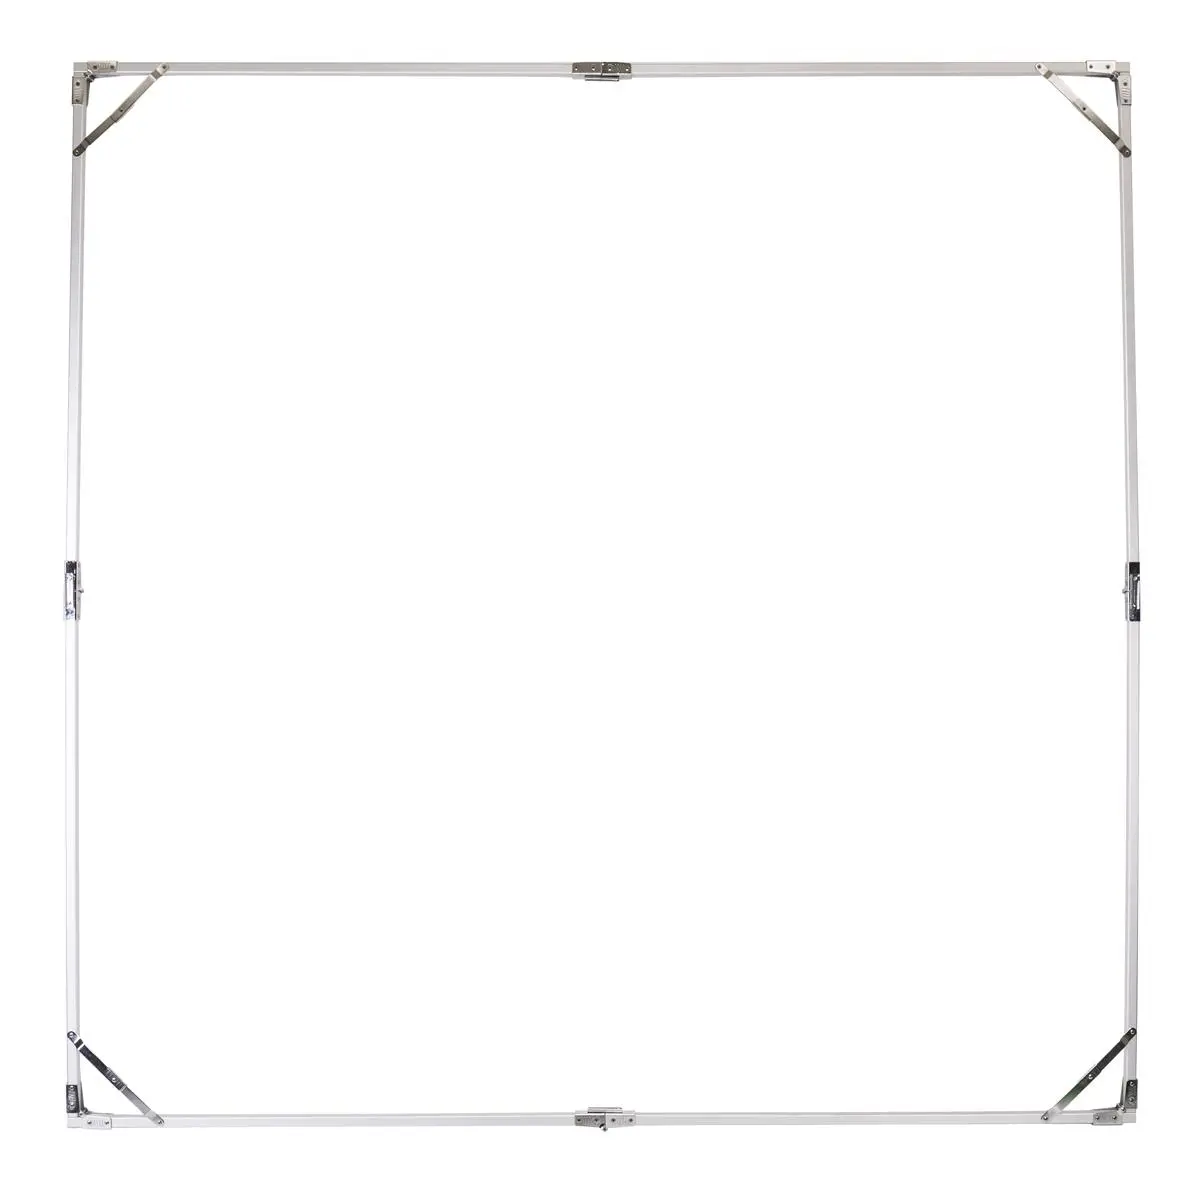 Placa transparente fotográfica 2.4*2.4m, difusor de moldura hd grande para estúdio de filmes retrato comercial